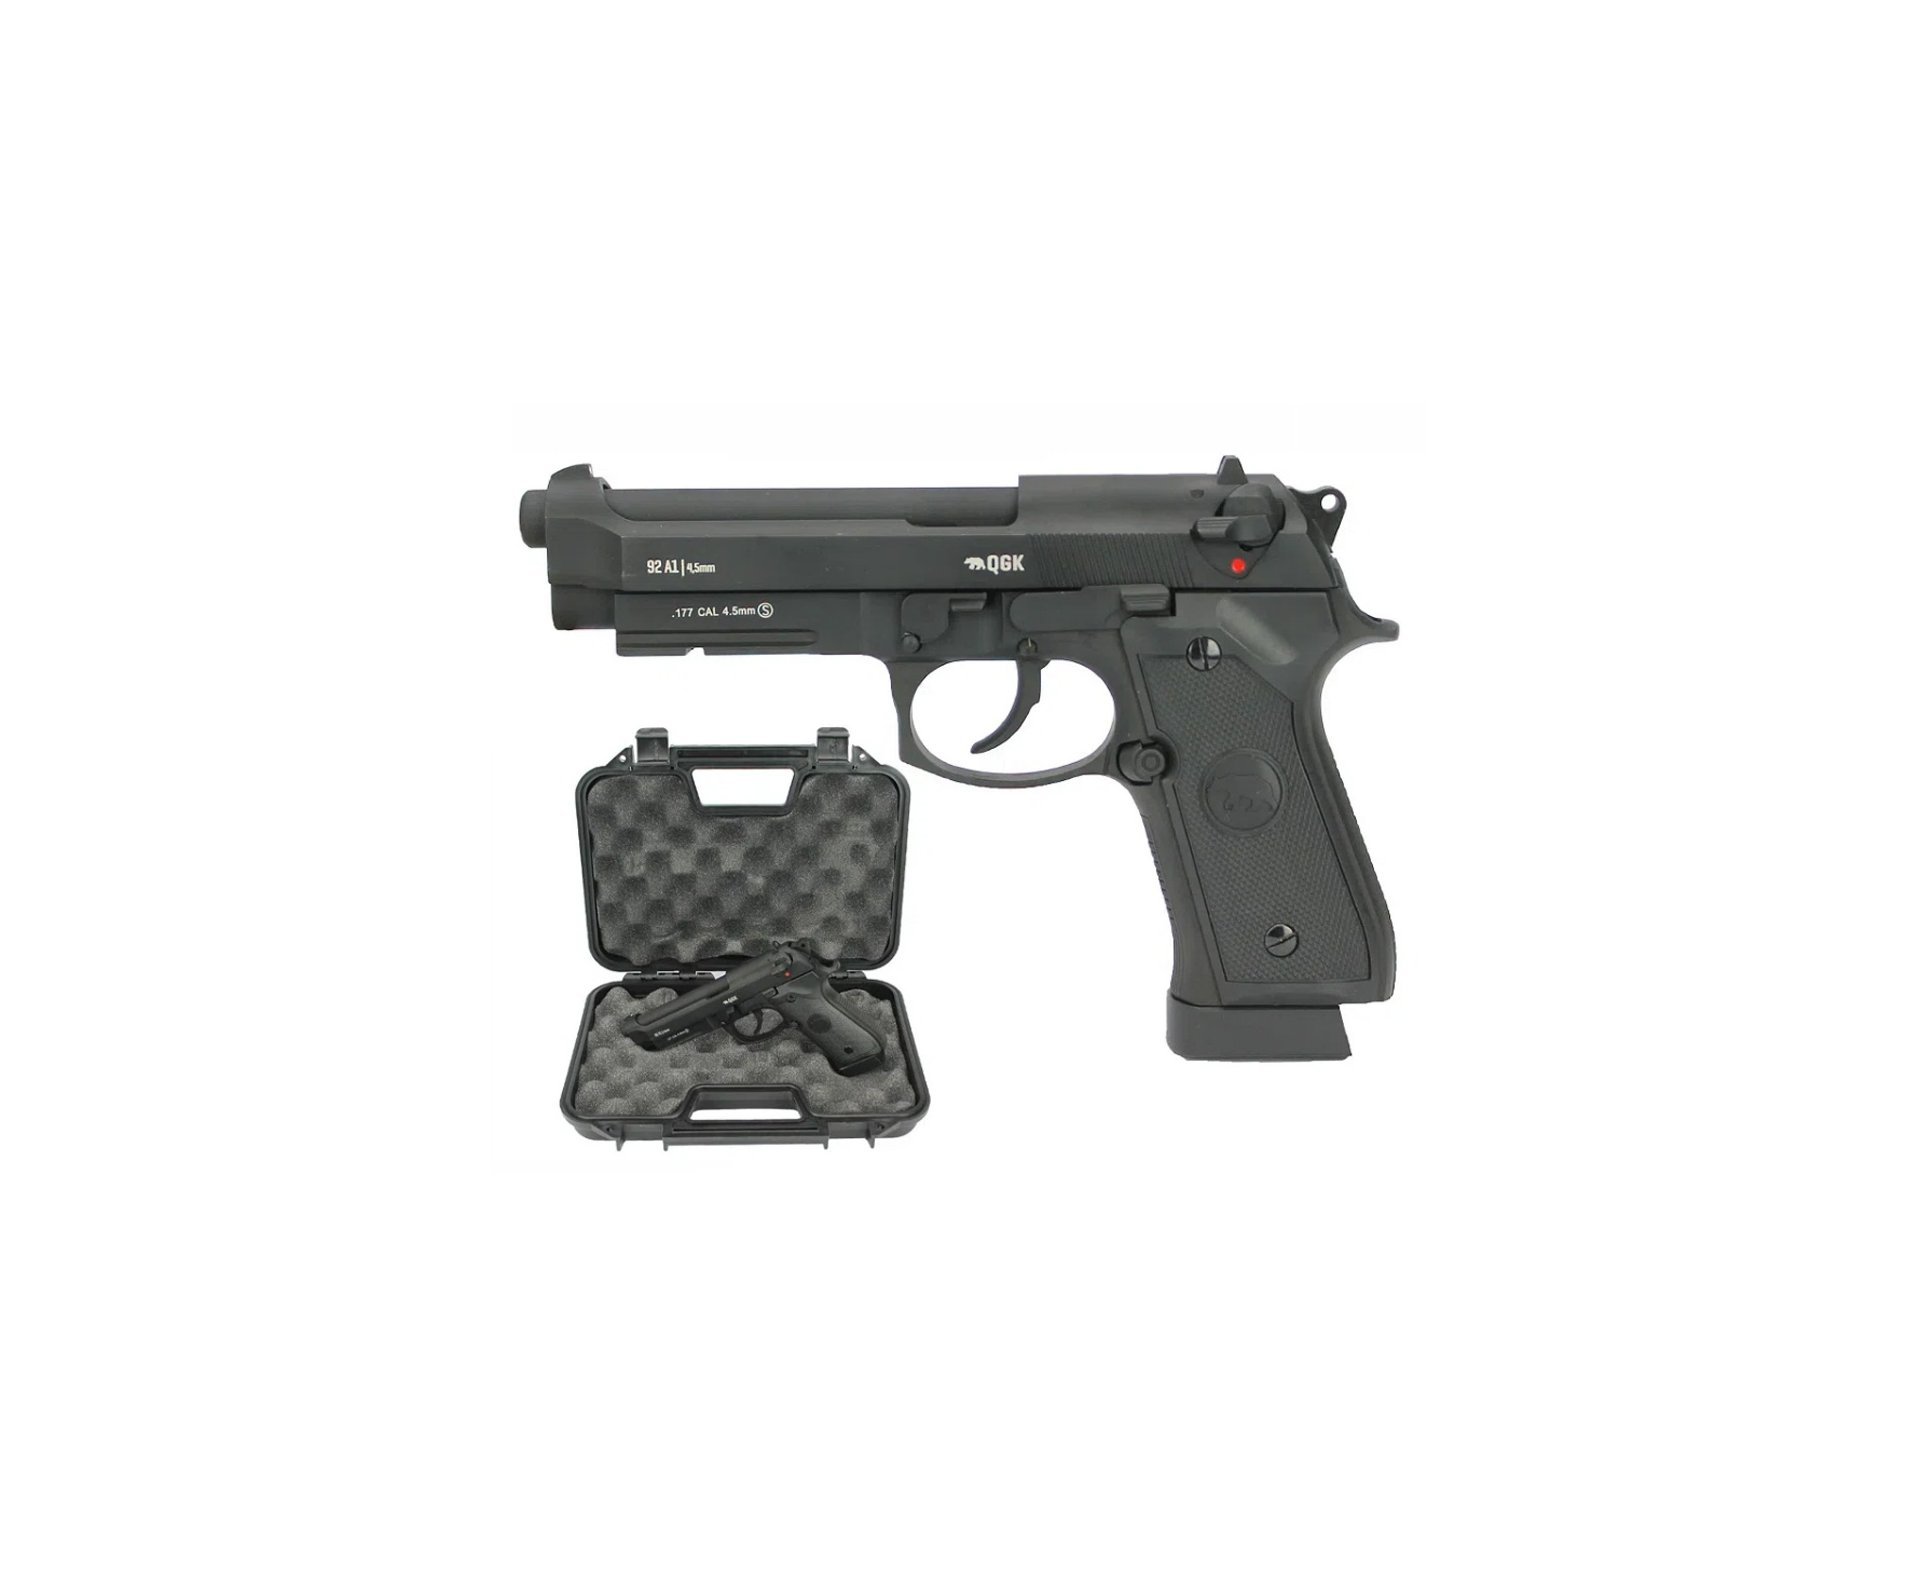 Pistola de Pressão CO2 GBB M92A1 Beretta Full Metal Blowback 4.5mm + Case - QGK + Co2 + Munição + Alvos + Óleo de silicone